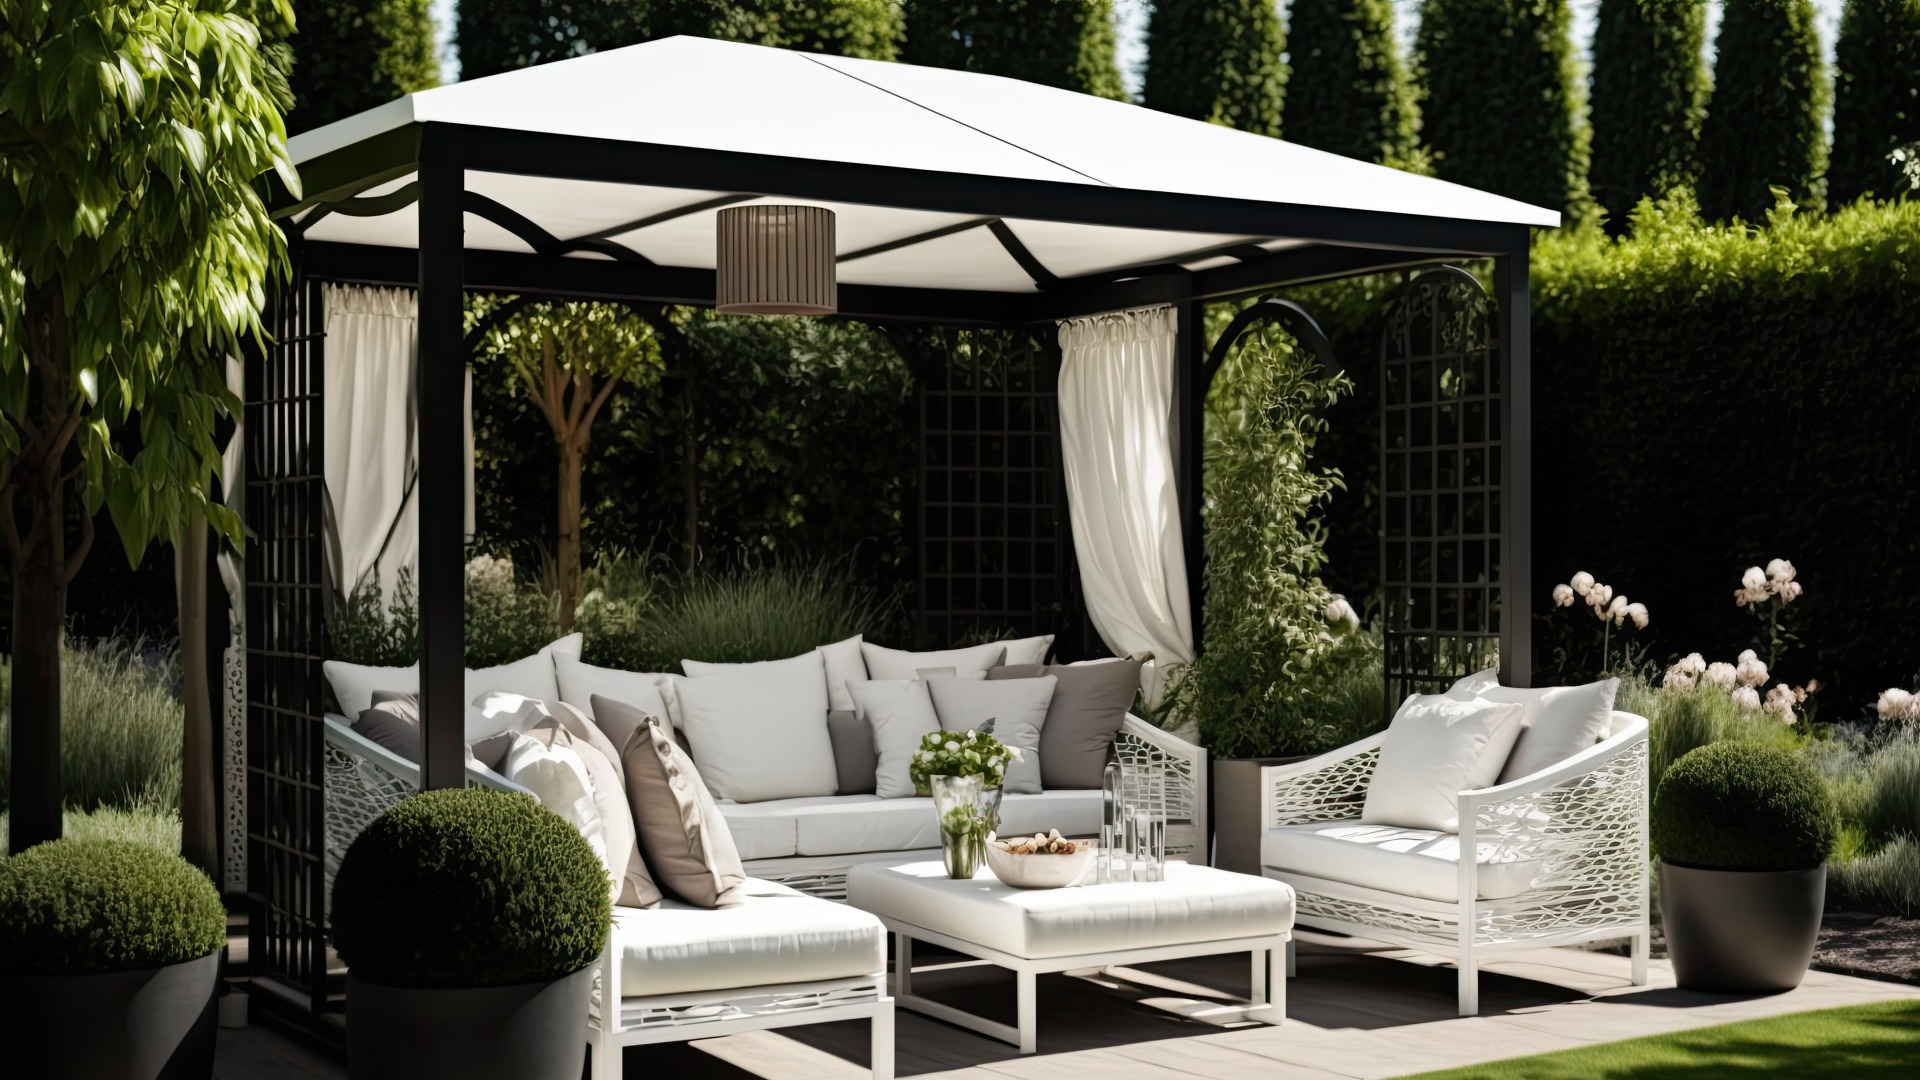 Ein ansprechender Pavillon im Garten, der Entspannung im Freien in einem eleganten Ambiente ermöglicht.